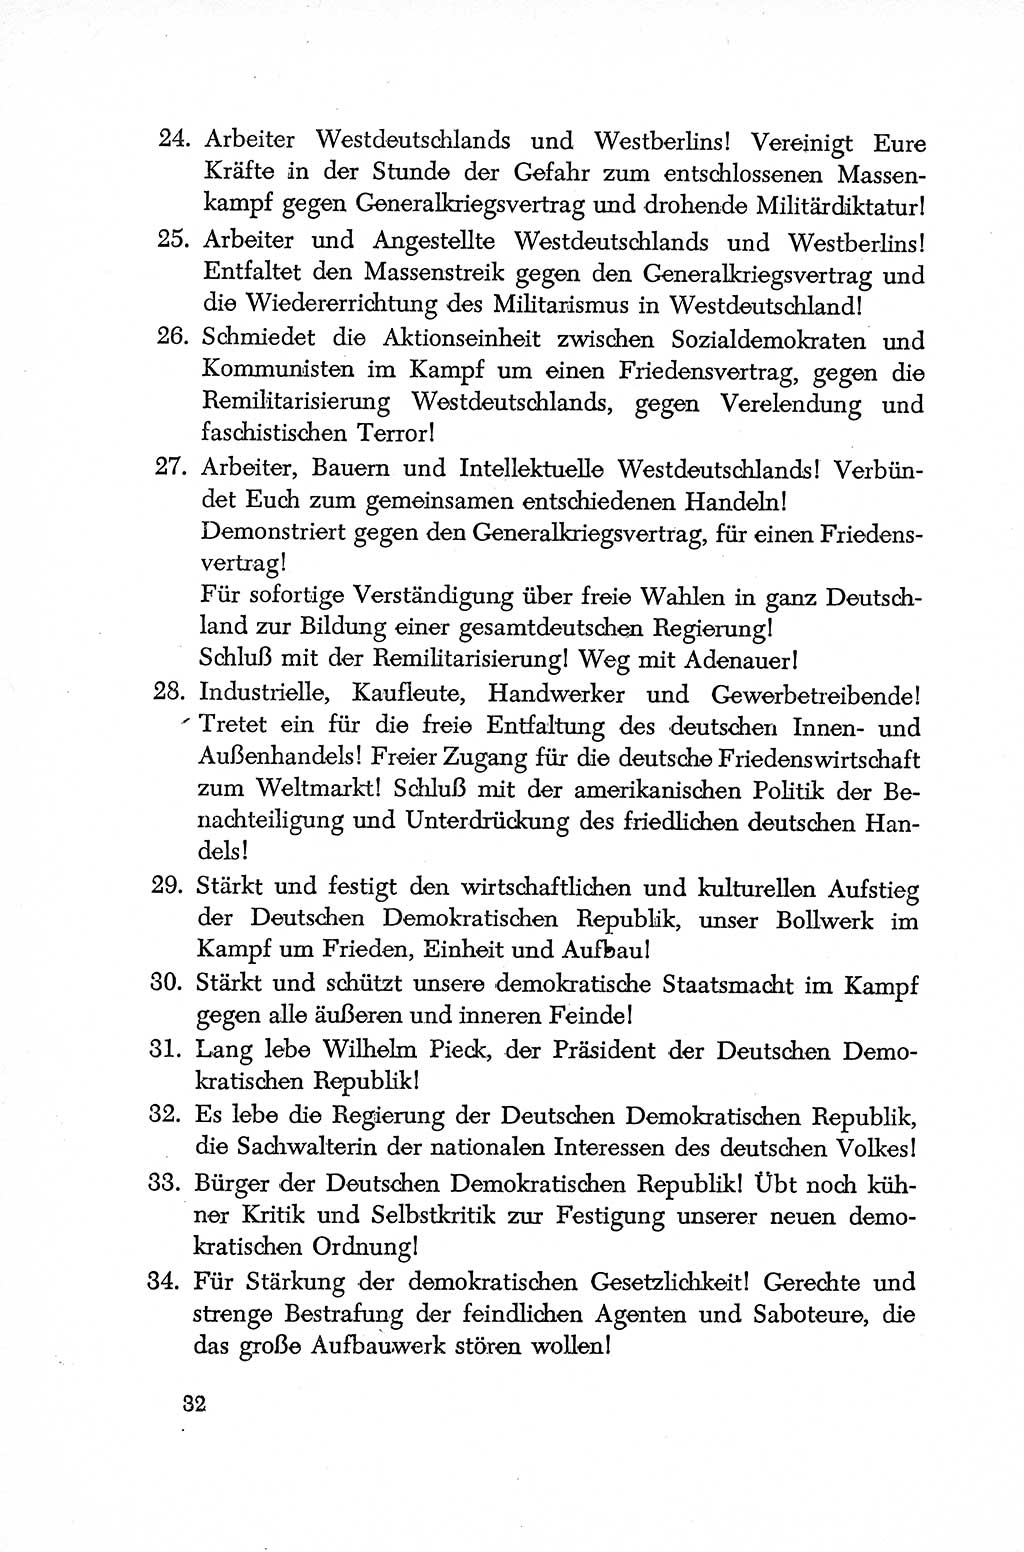 Dokumente der Sozialistischen Einheitspartei Deutschlands (SED) [Deutsche Demokratische Republik (DDR)] 1952-1953, Seite 32 (Dok. SED DDR 1952-1953, S. 32)